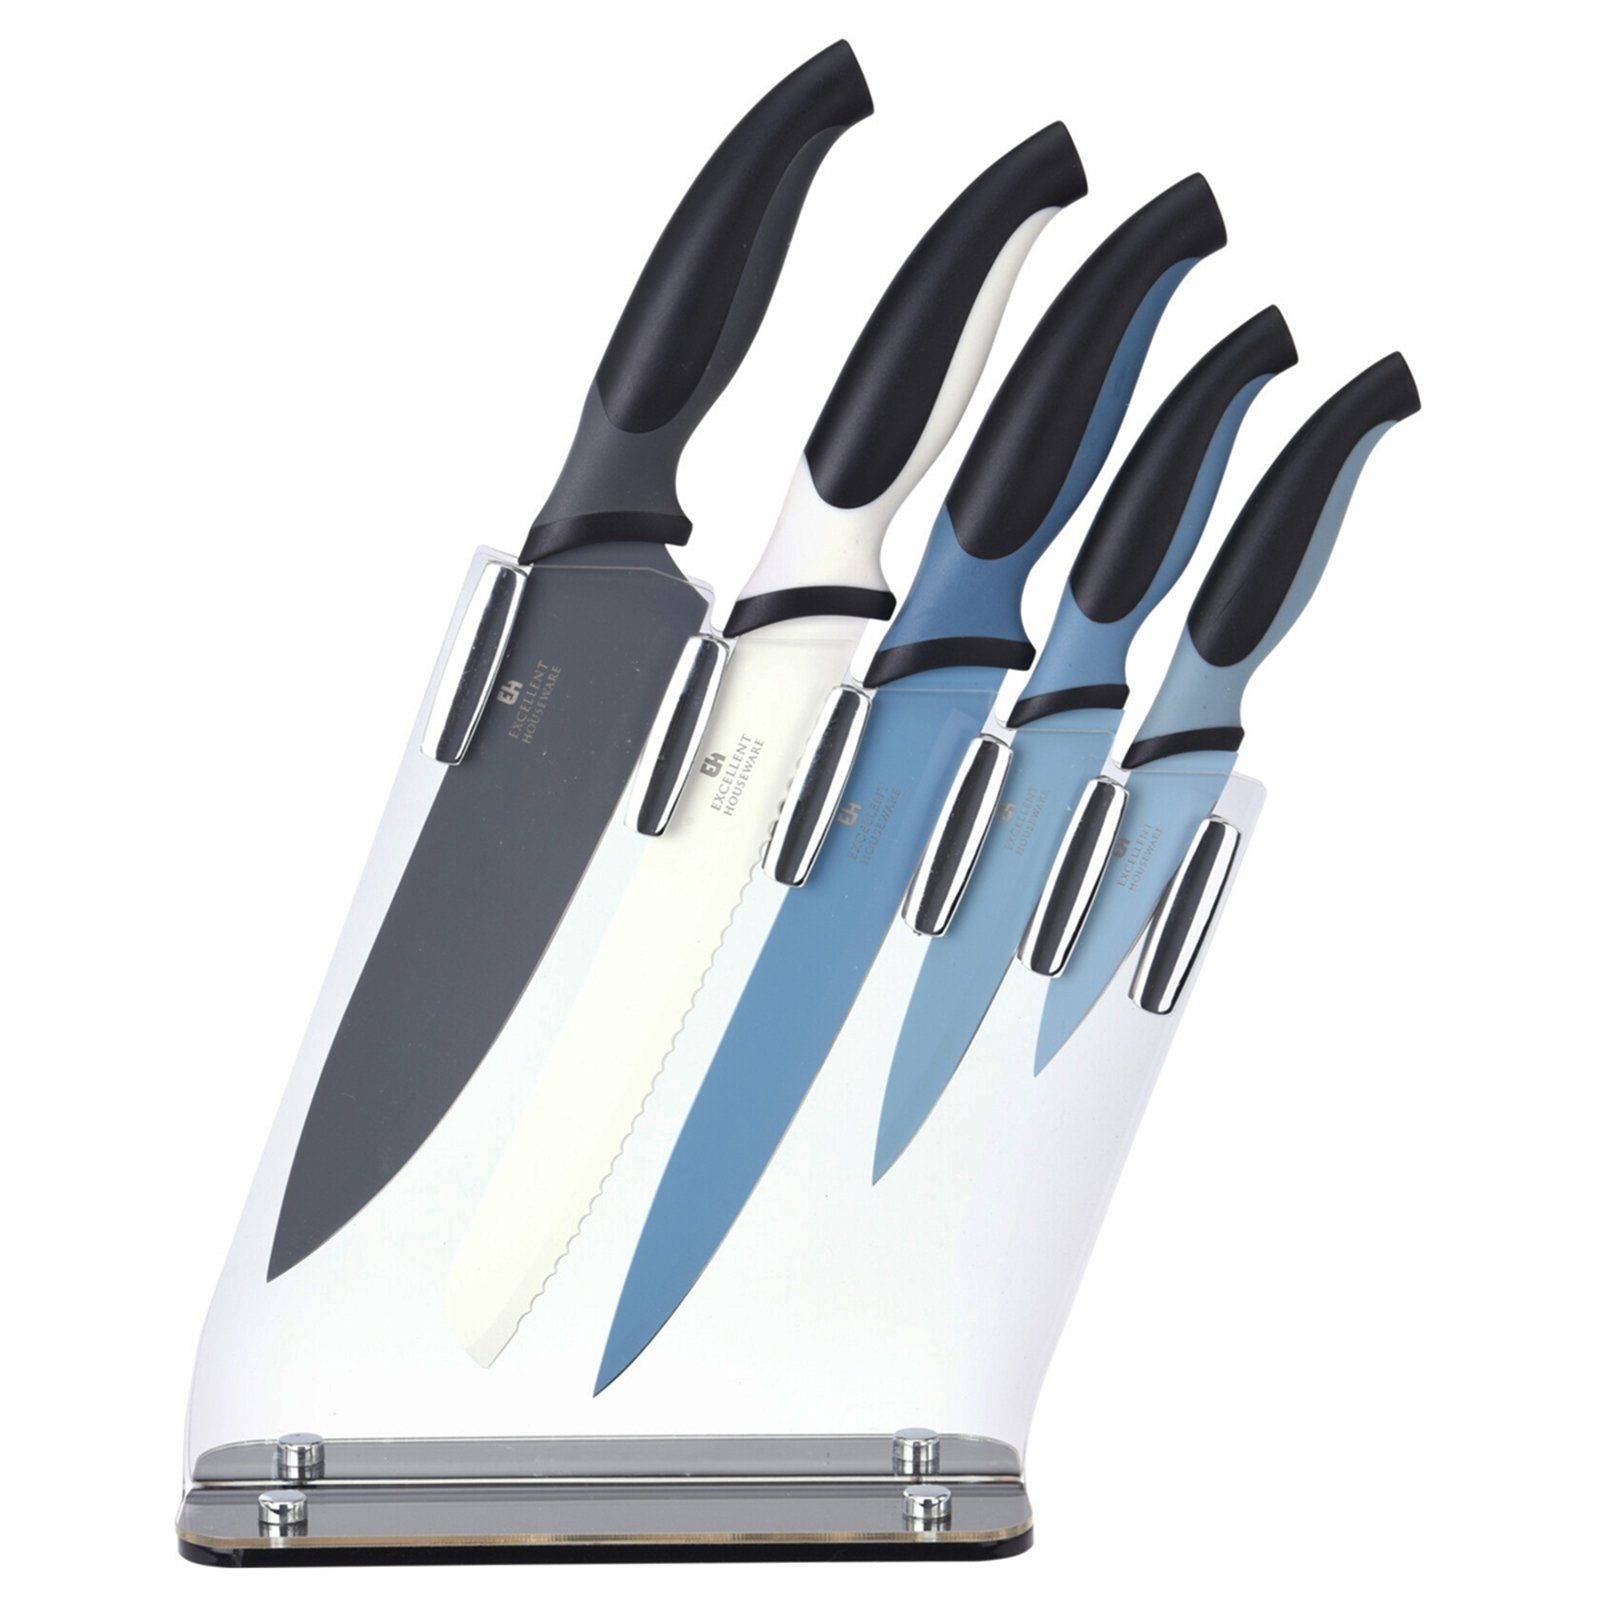 Neuetischkultur Messer-Set Messer gefärbt (5-tlg) Set 5-teilig